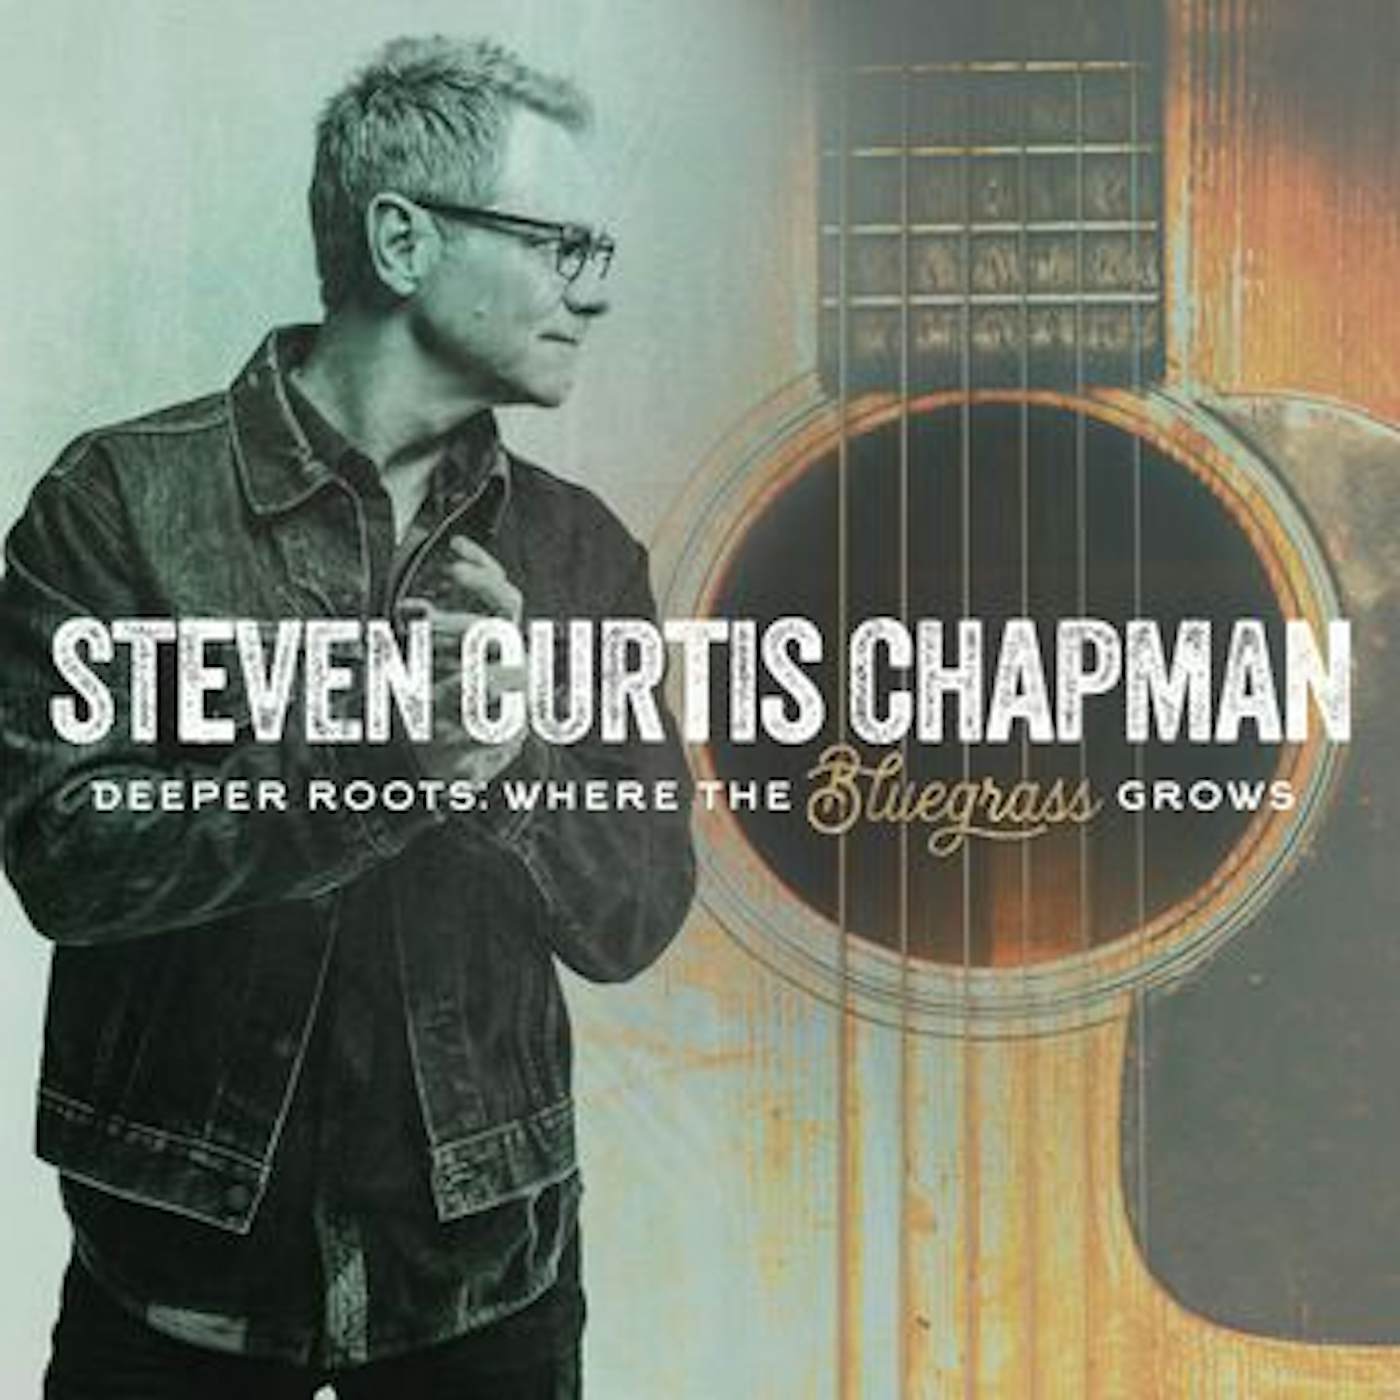 Steven Curtis Chapman DEEPER ROOTS: WHERE THE BLUEGRASS GROWS Vinyl Record